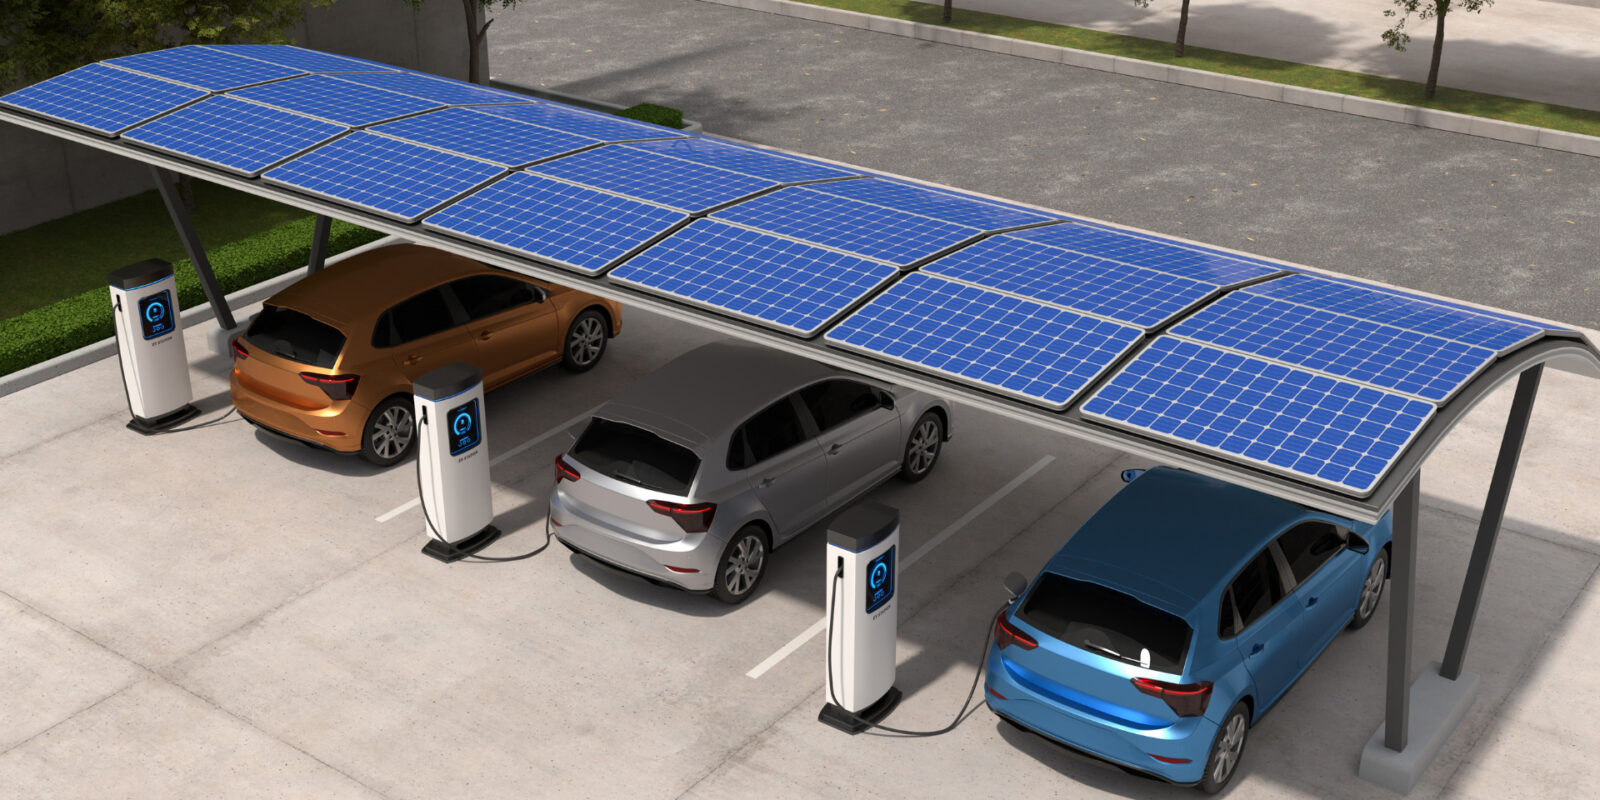 Der Solar-Carport: Eine umfassende Lösung für nachhaltige Mobilität